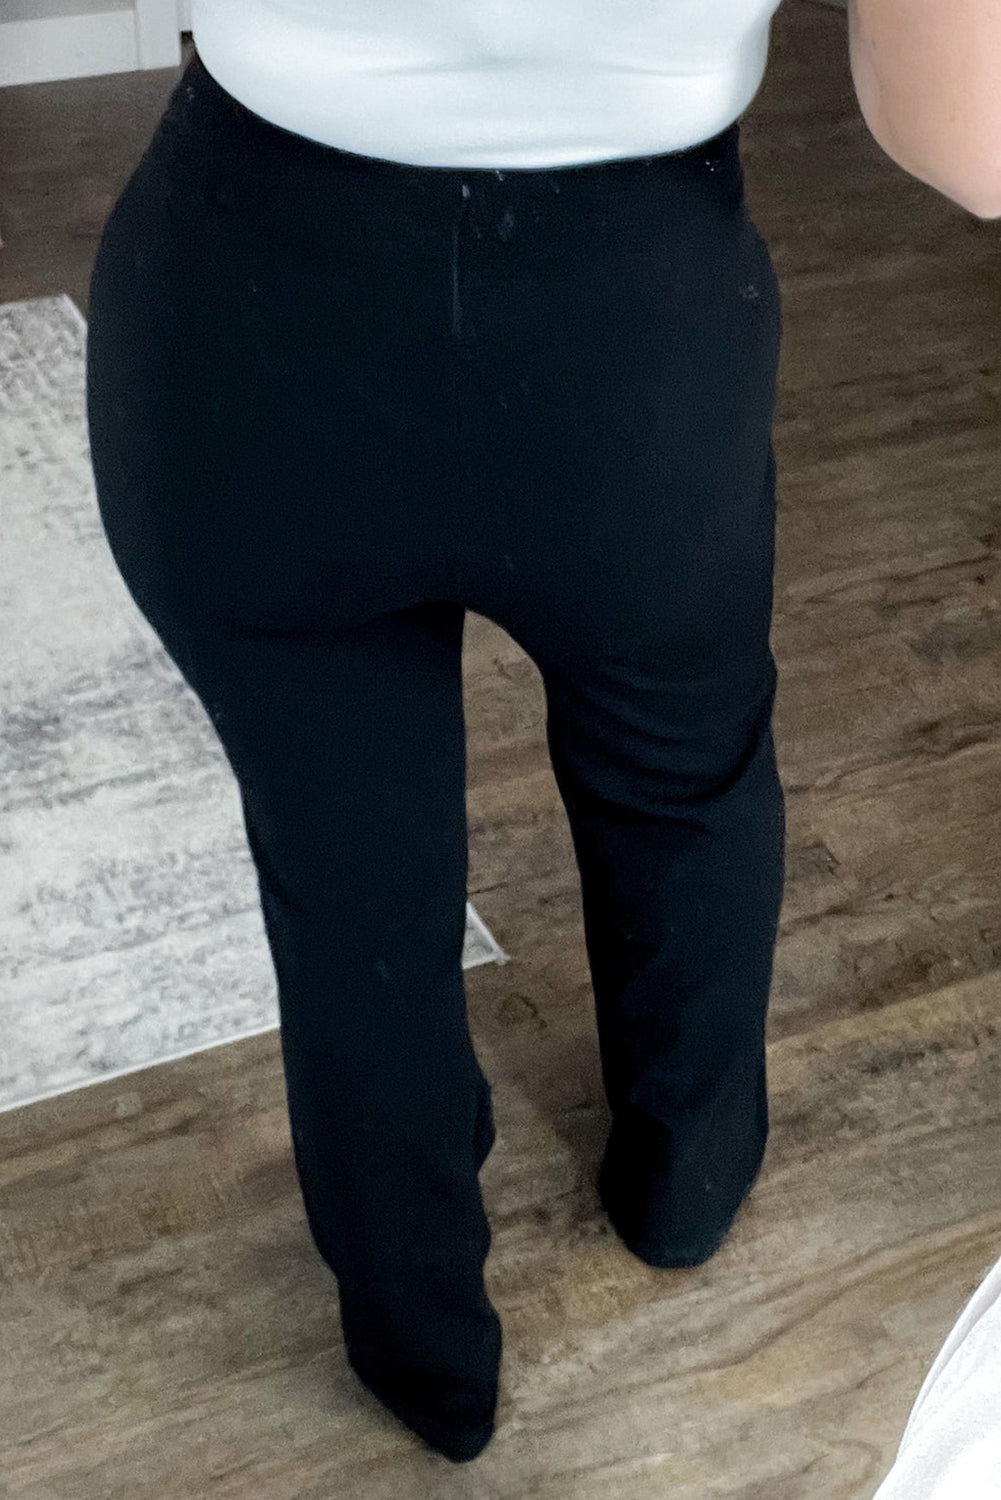 Črne hlače velike velikosti z ravnimi nogami z izpostavljenimi šivi